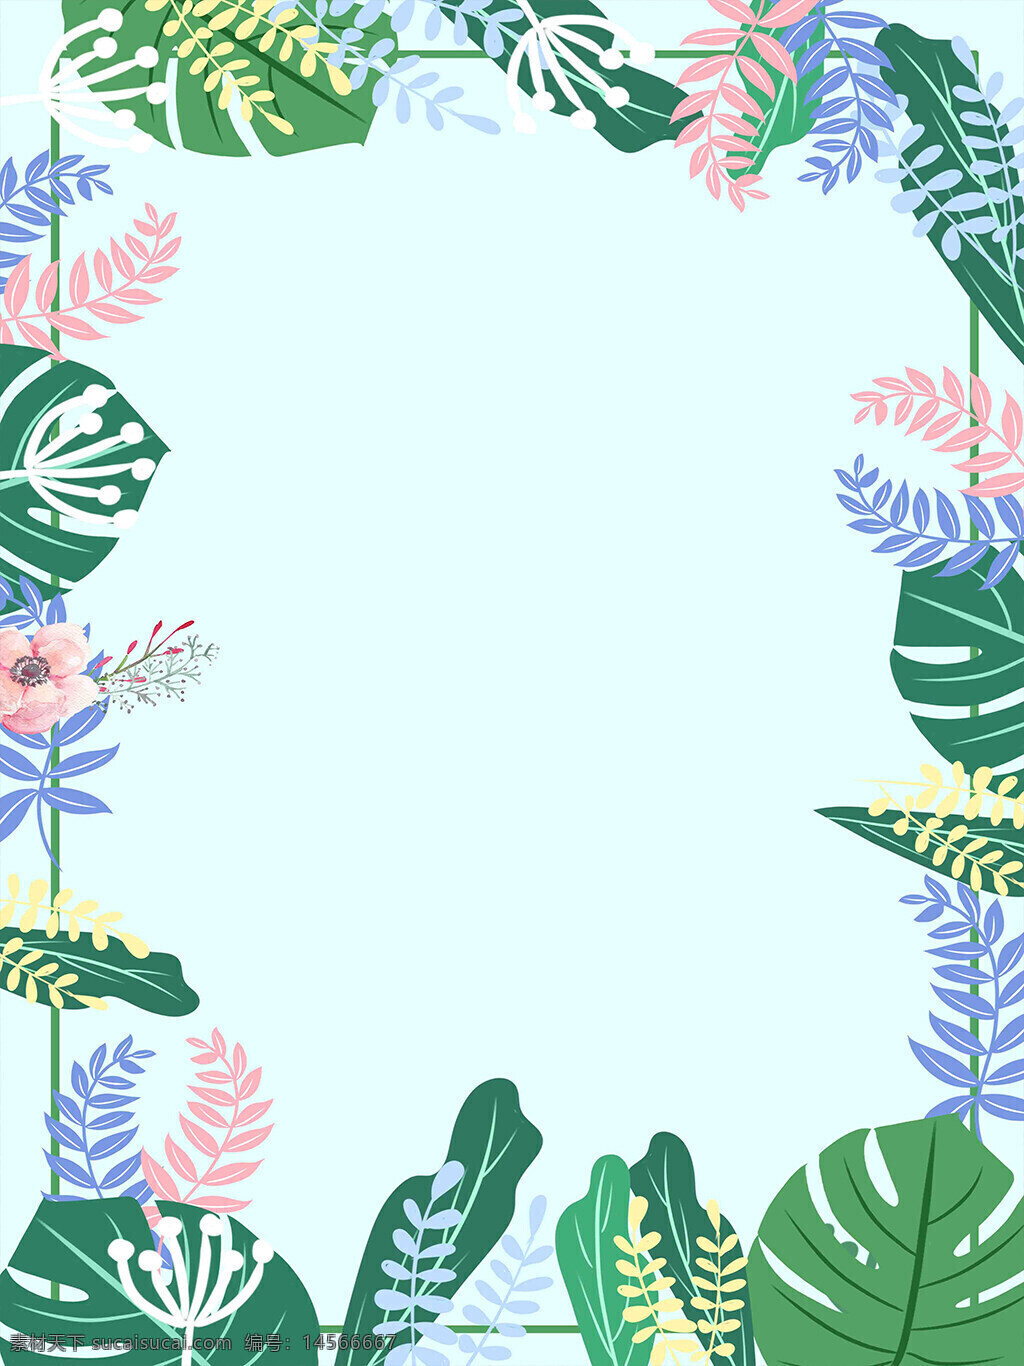 热带植物装饰背景 热带植物 装饰背景 叶子 龟背叶 绿叶 花叶